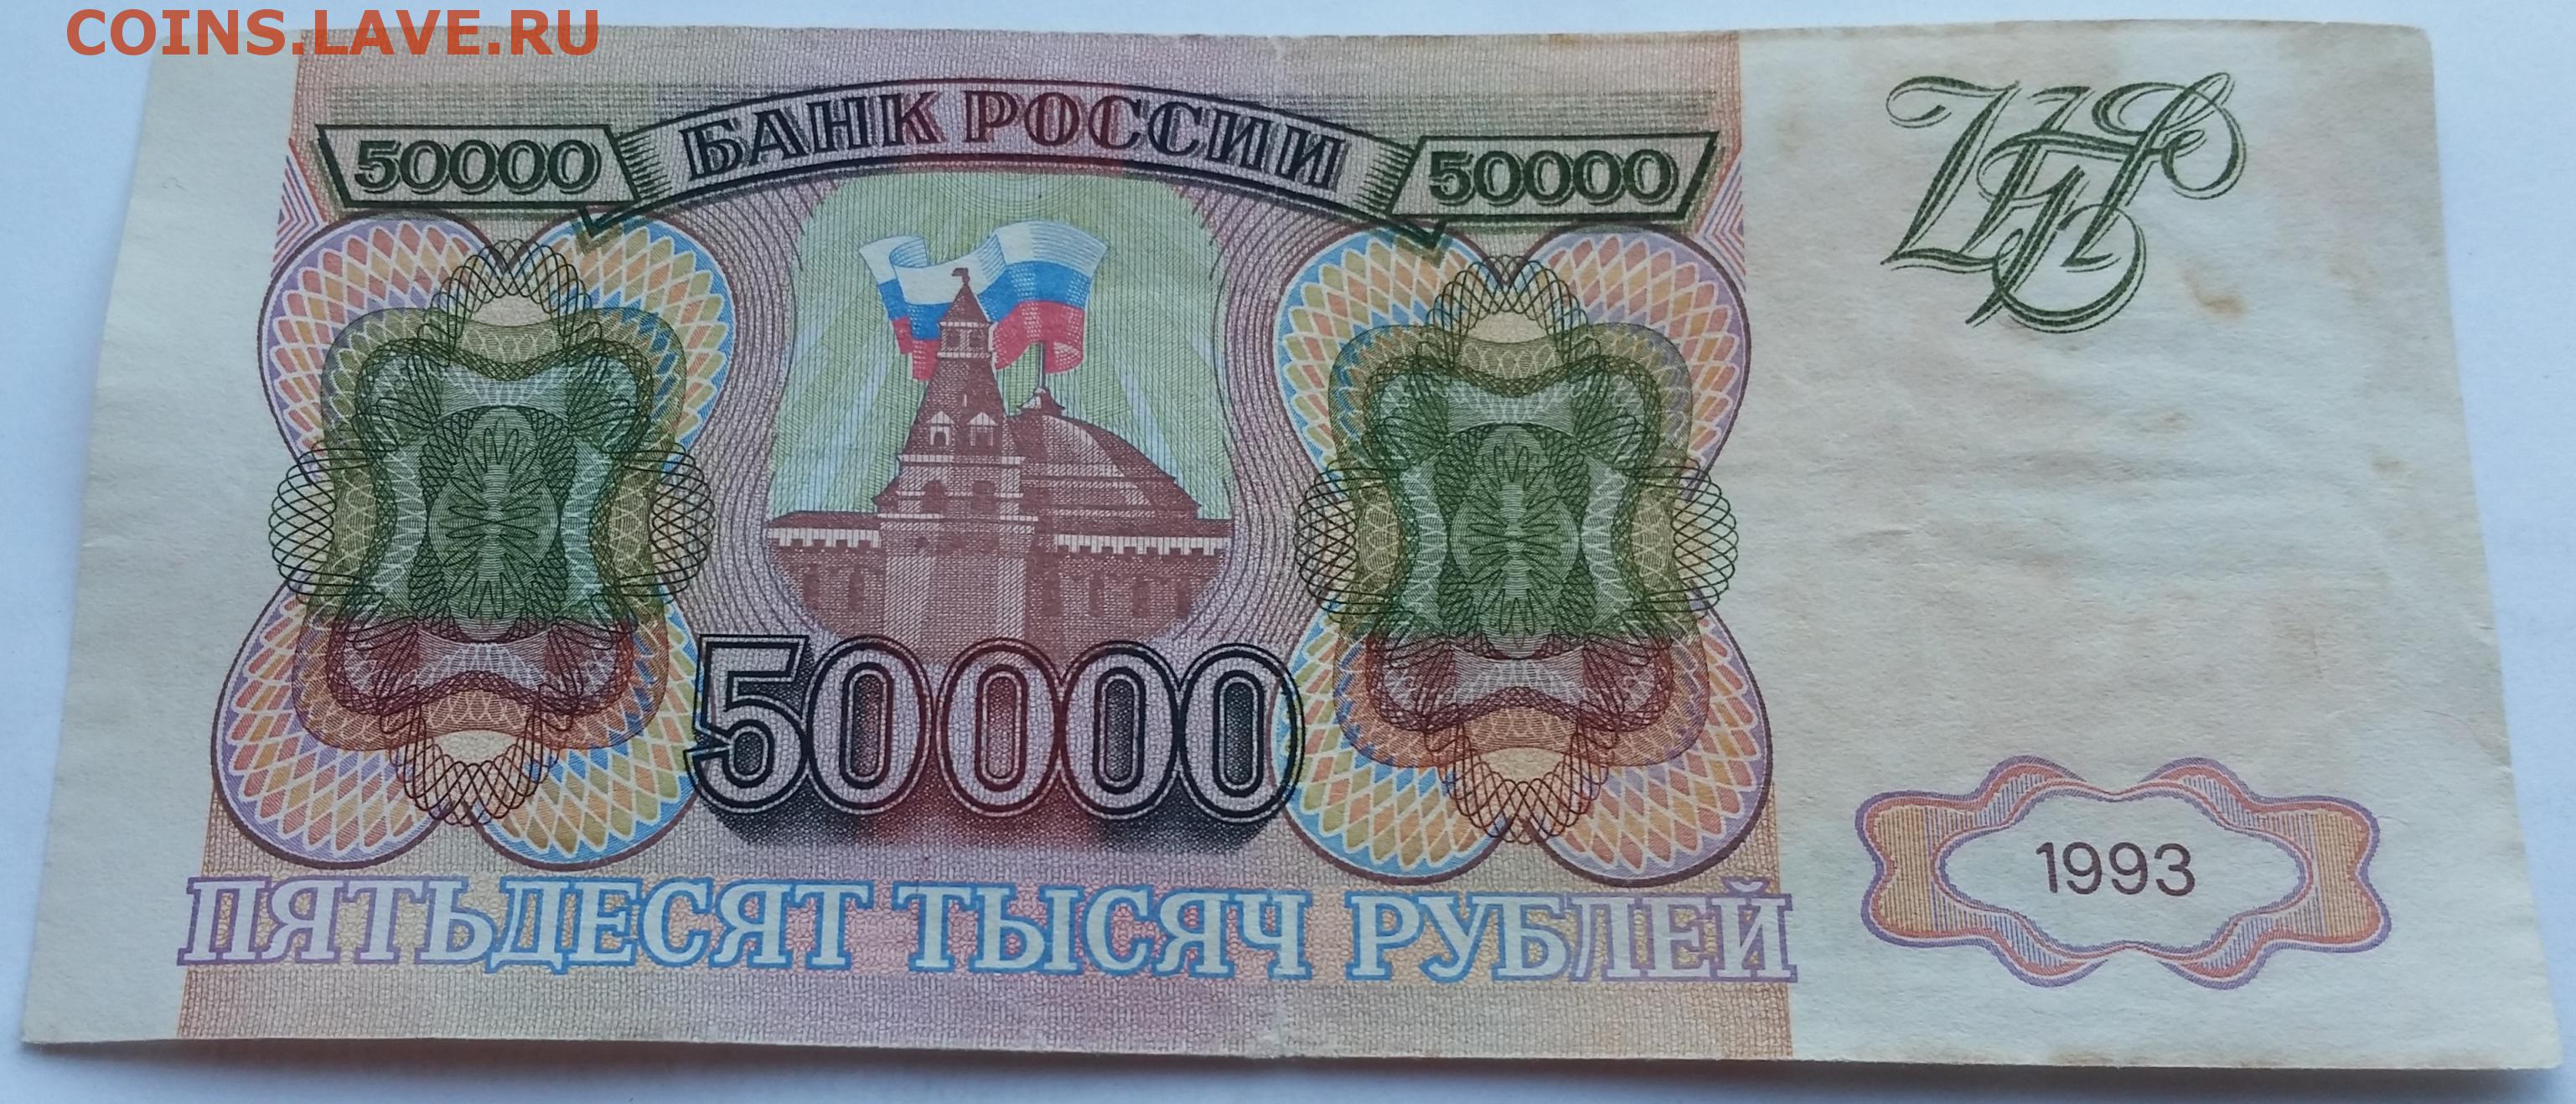 50000 рублей 1993. Купюра 50000 рублей 1993. Купюра 50000 рублей 1993 года. Банкнота 50000 рублей 1993.